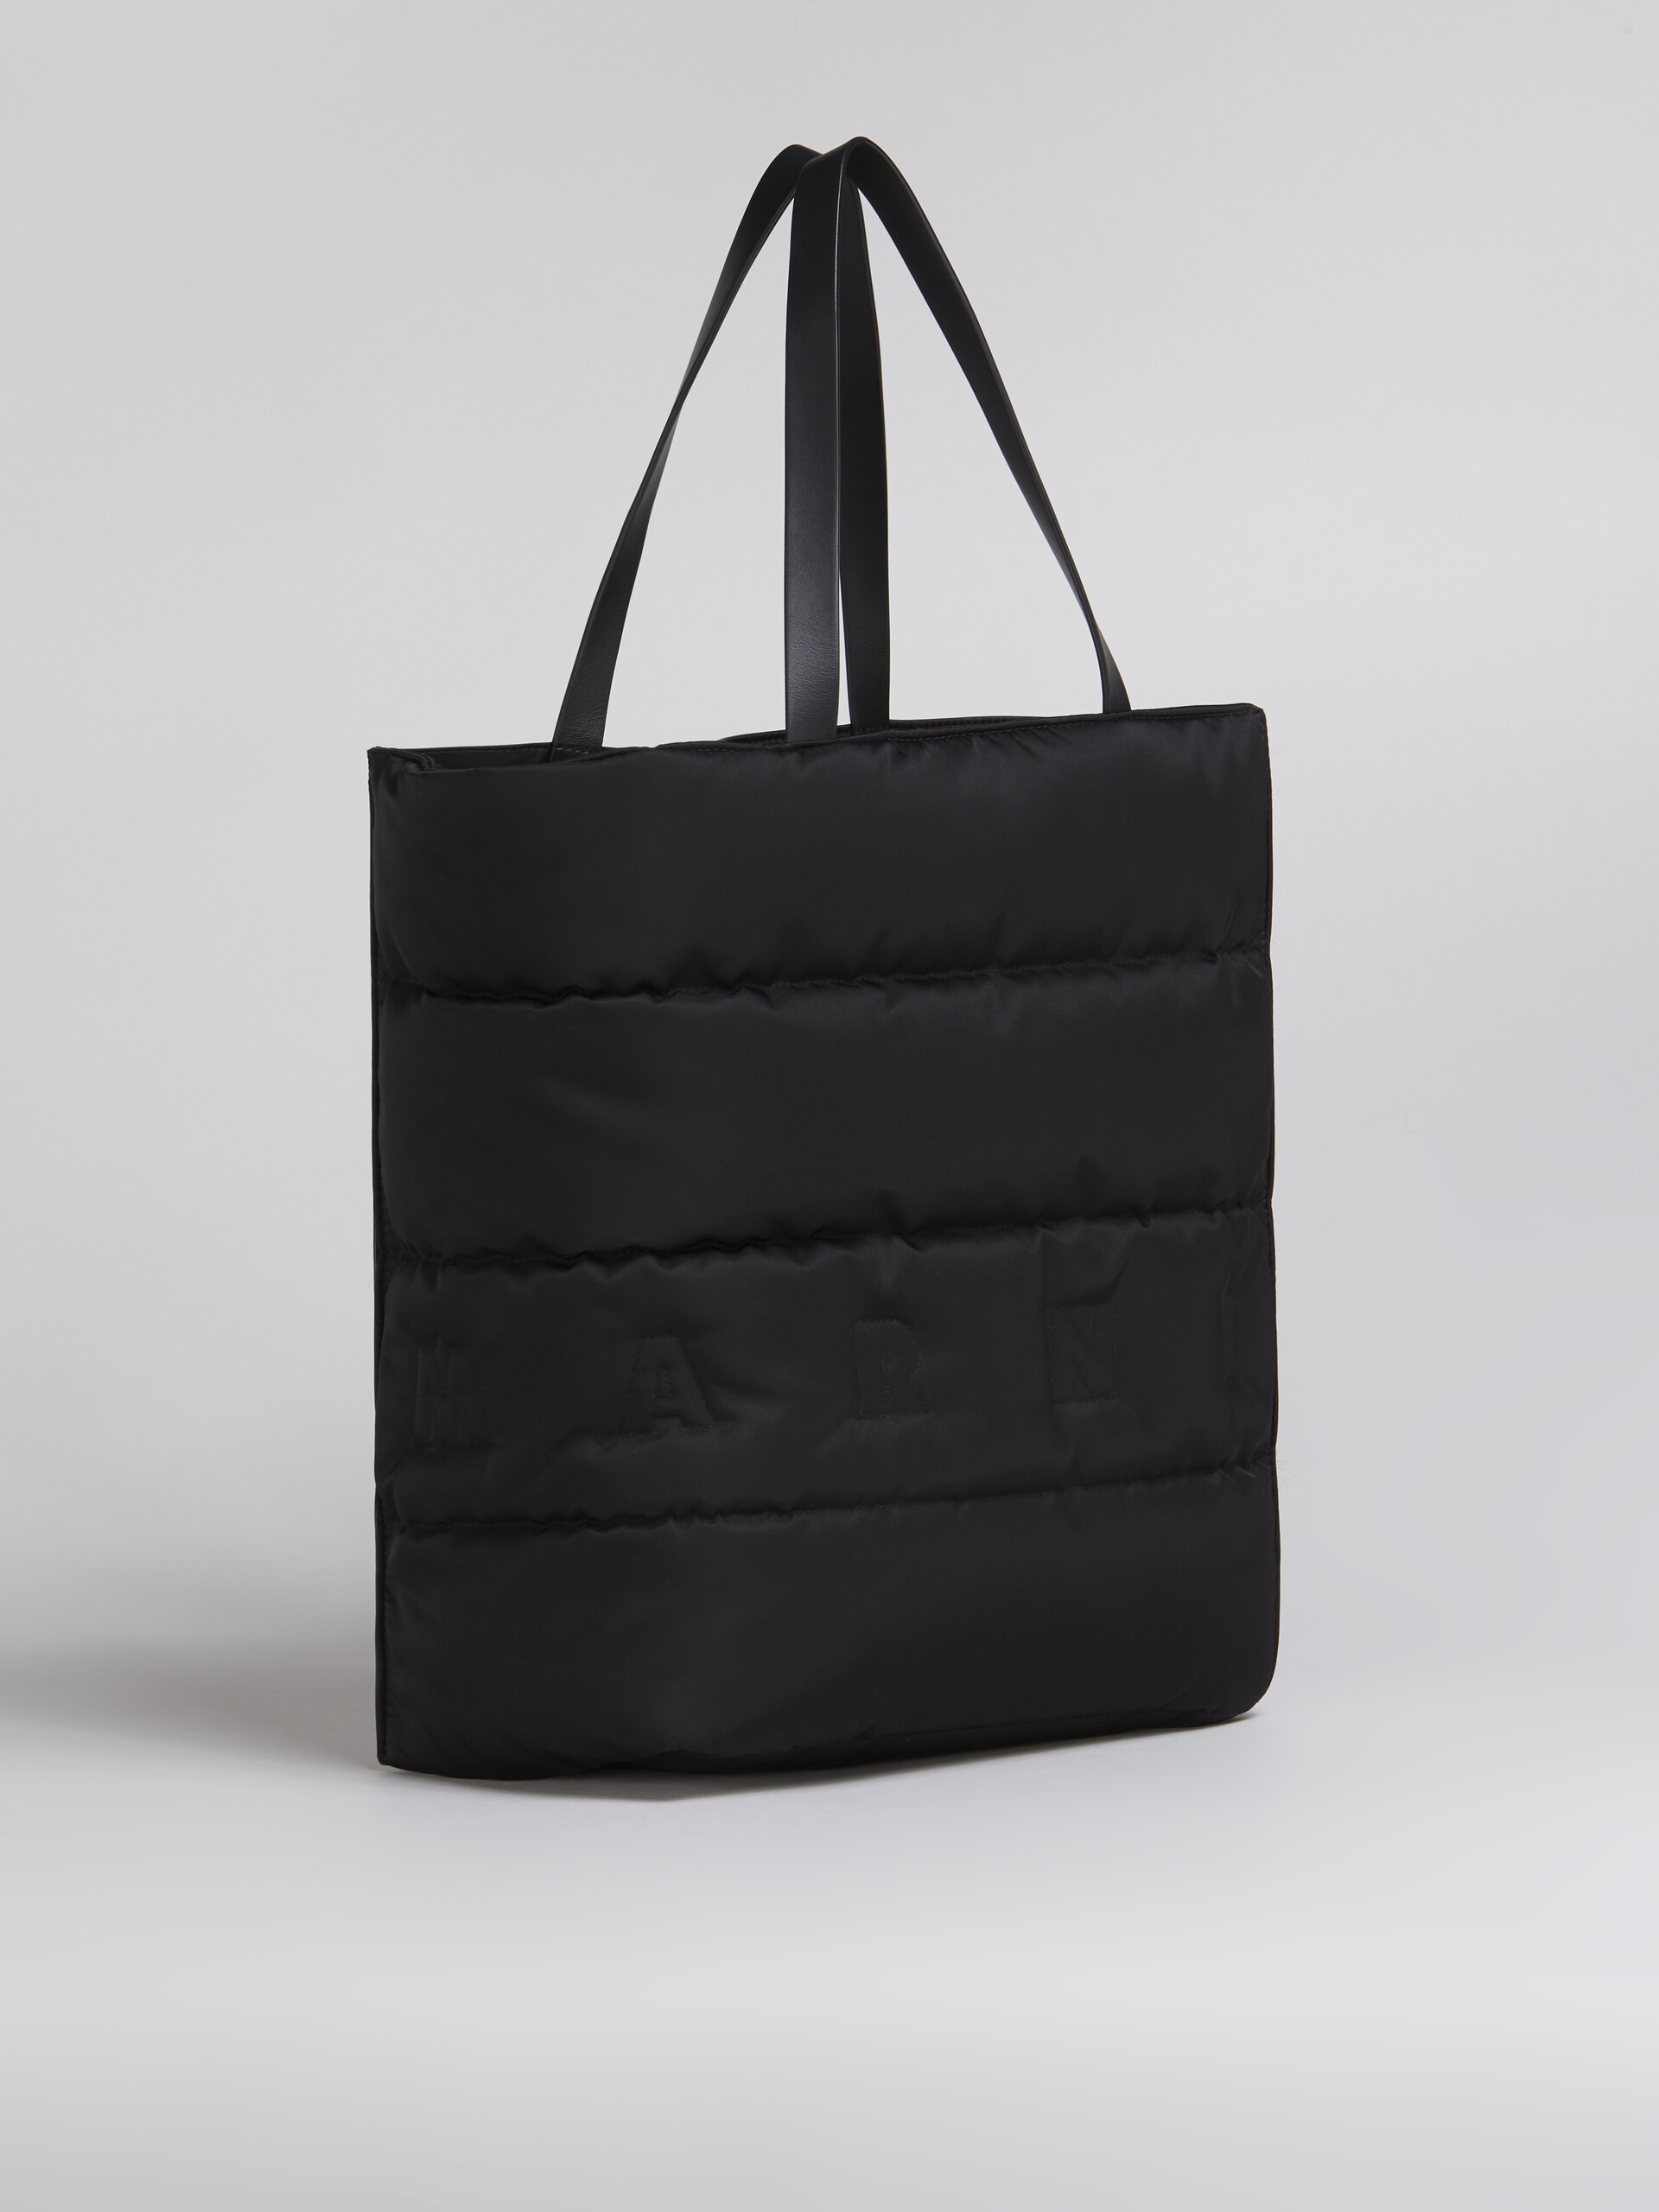 Bolso grande MUSEO SOFT negro de nailon acolchado - Bolsos shopper - Image 6